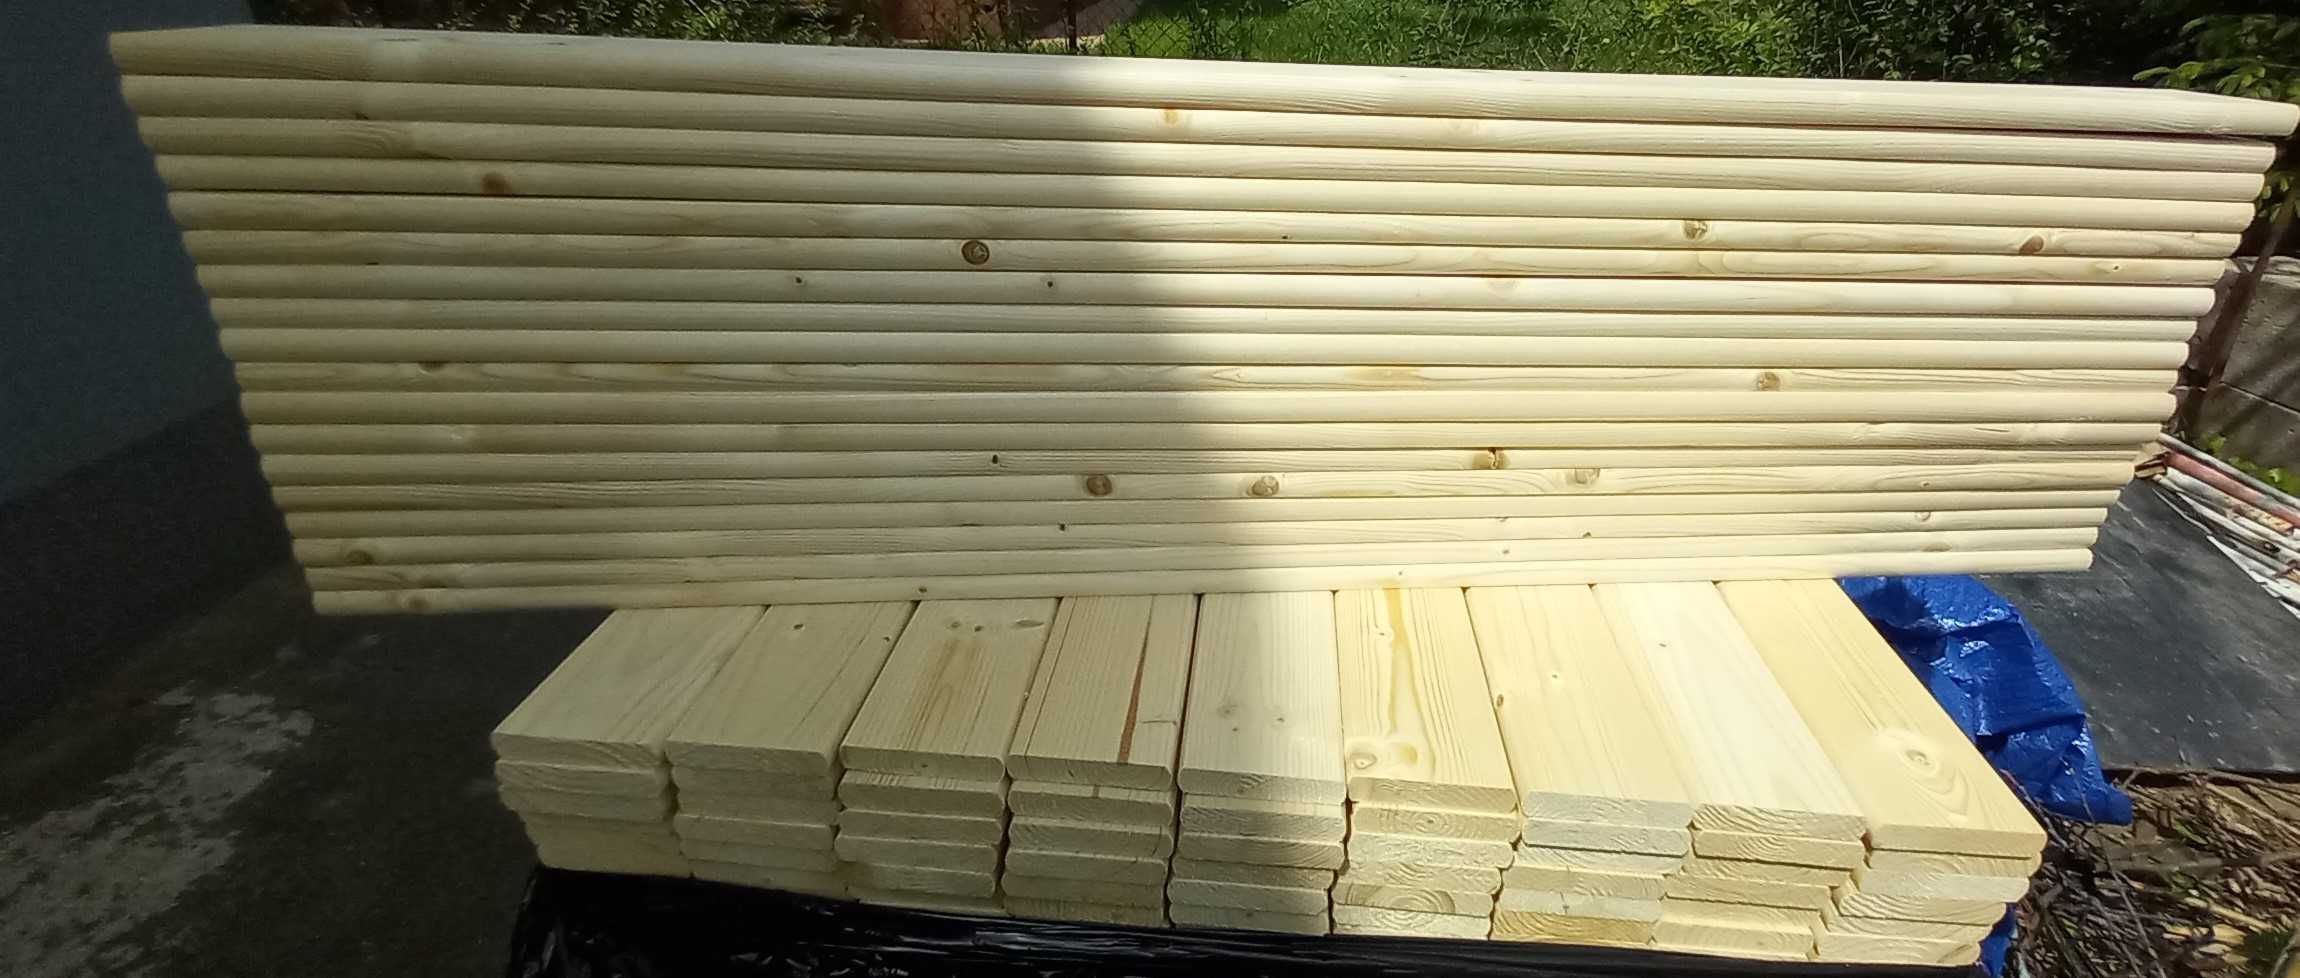 Deski drewniane-nowe,suche,heblowane, 120cmx9cmx2cm-PROMOCYJNA CENA